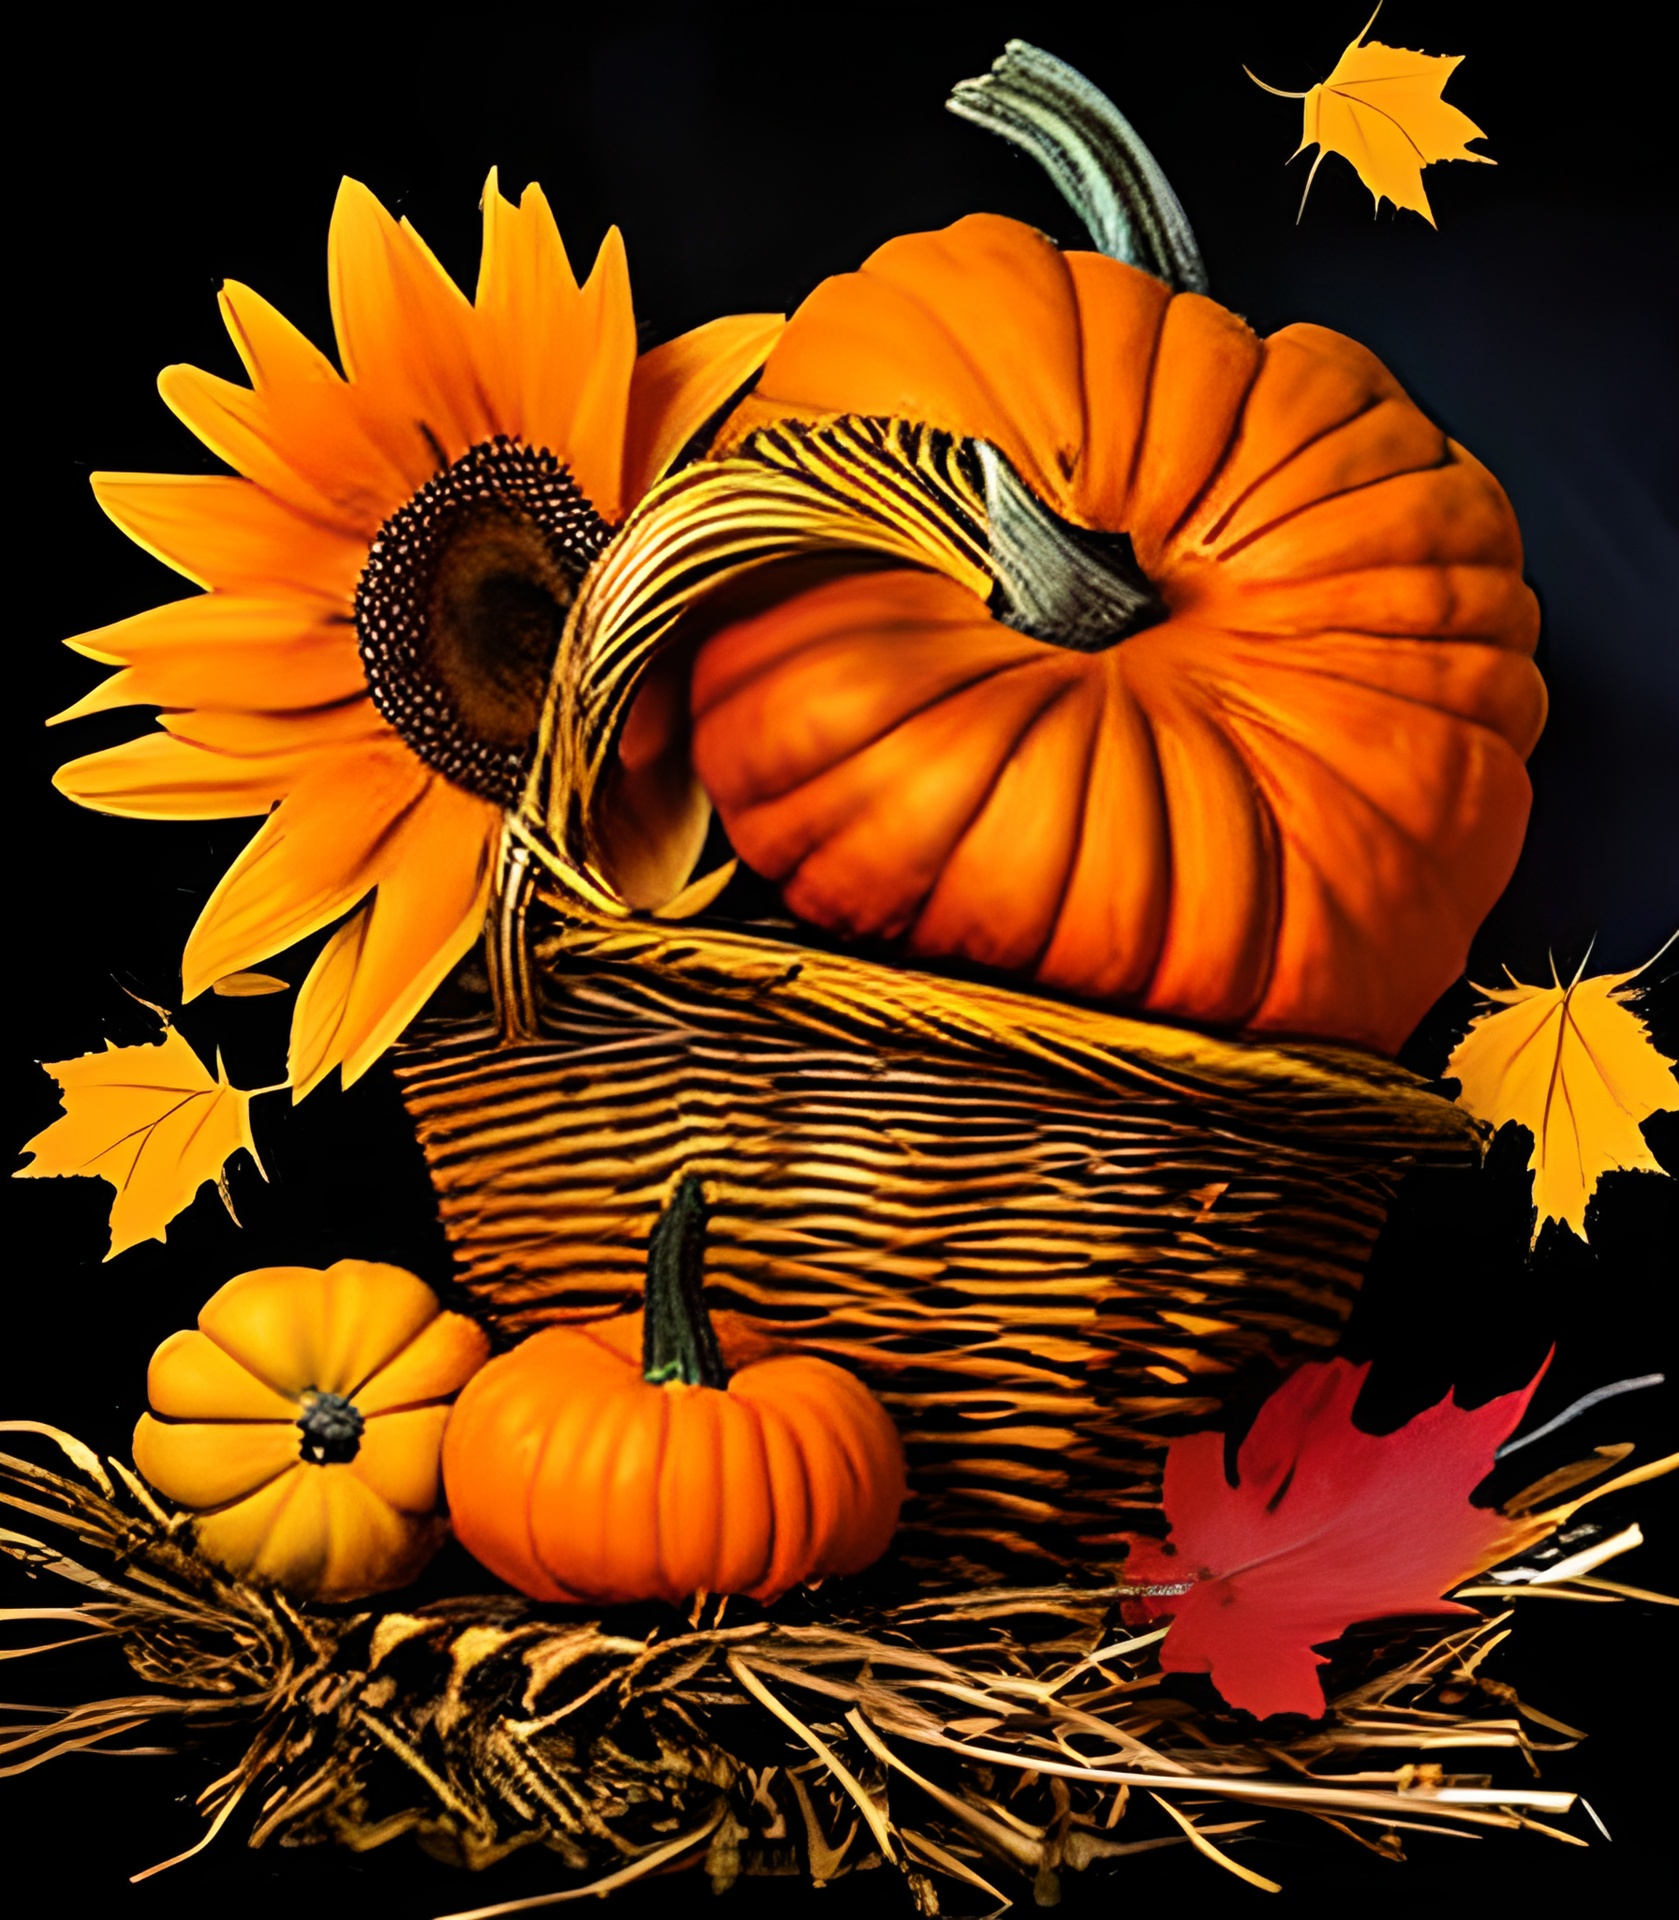 Autumn Pumpkin Floral Arrangement Free Stock Photo - Public Domain Pictures